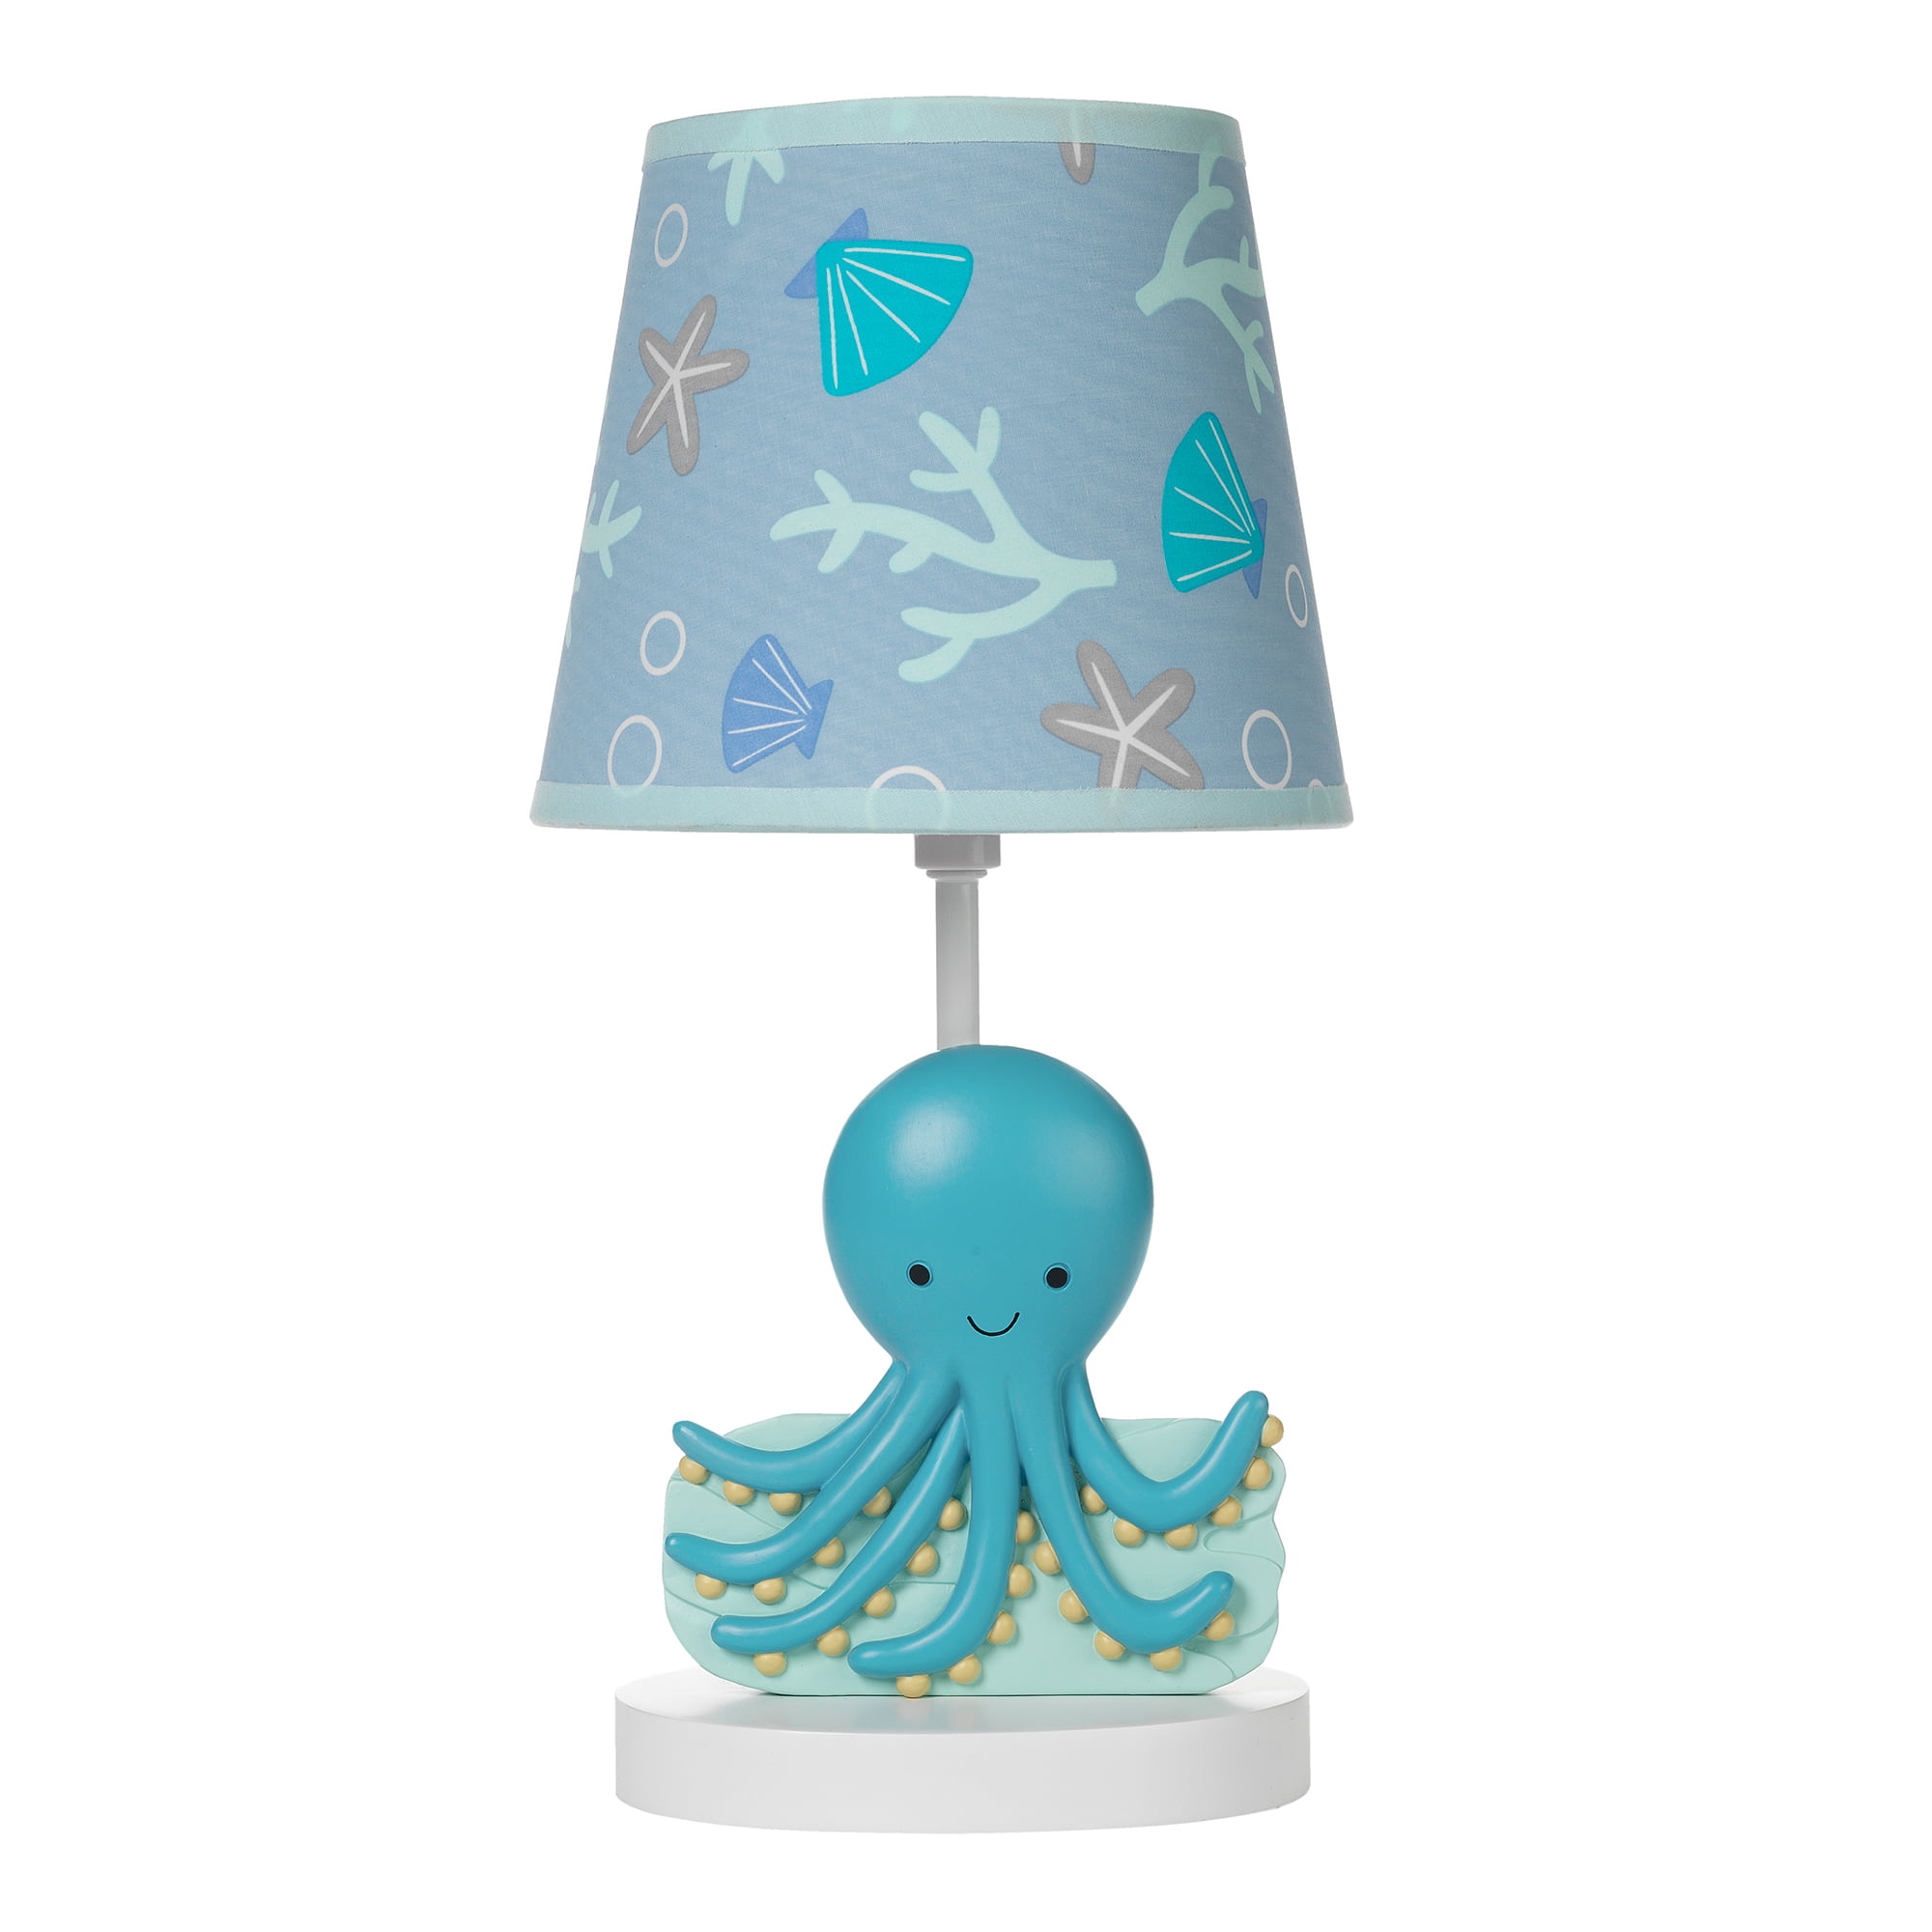 Floor lamp lampshade baby lamp nursery whale fish sea ocean